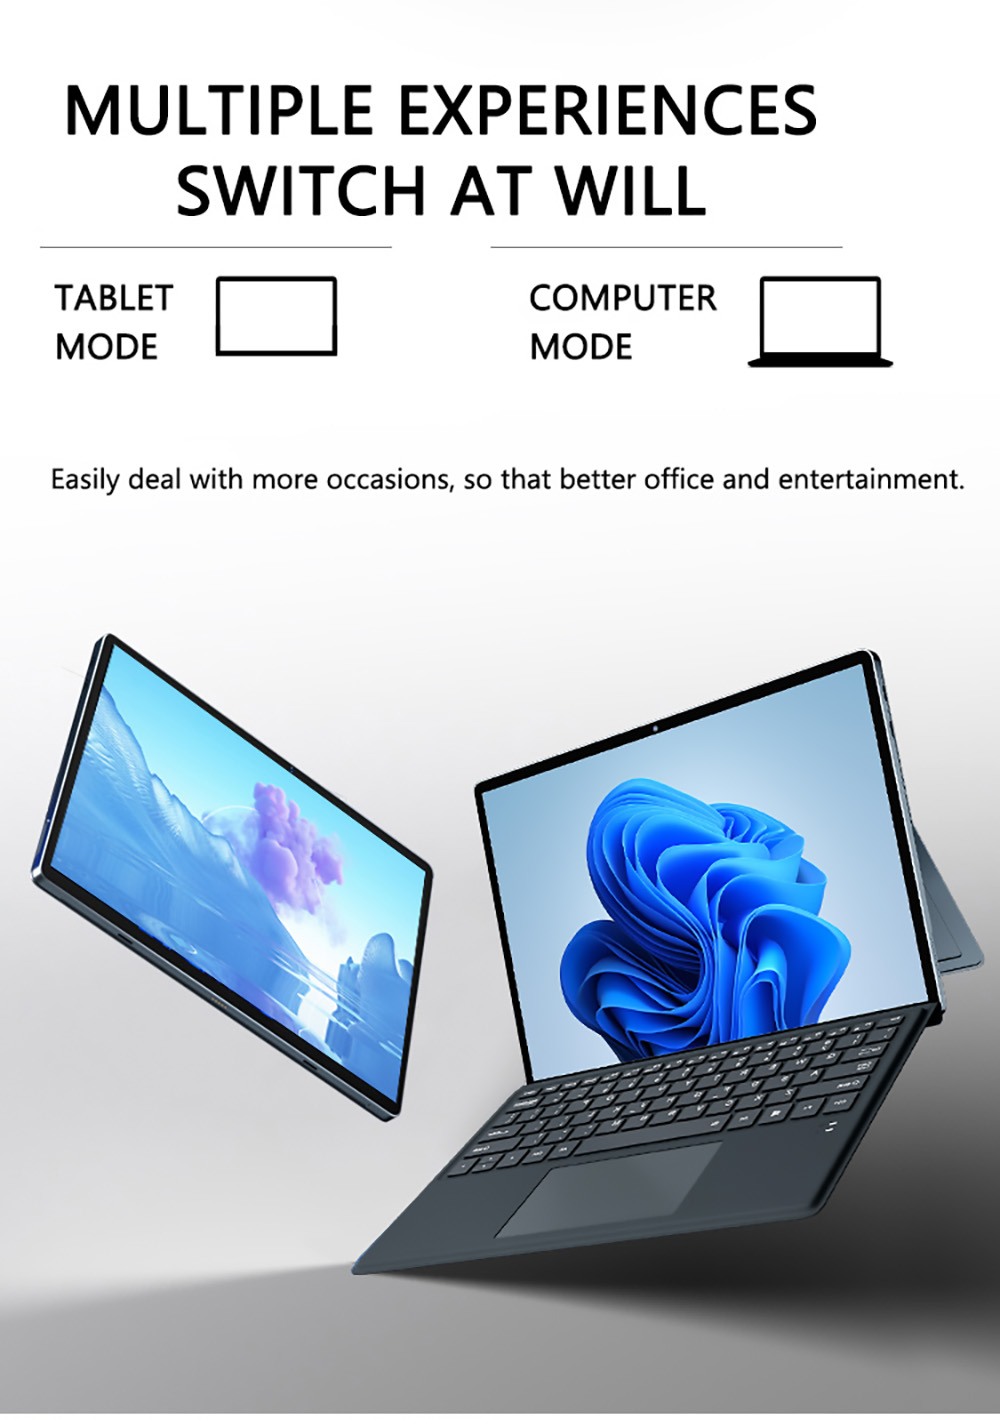 Ordinateur Tablette Kuu Lebook - Intel core i7-8550U - Framboise